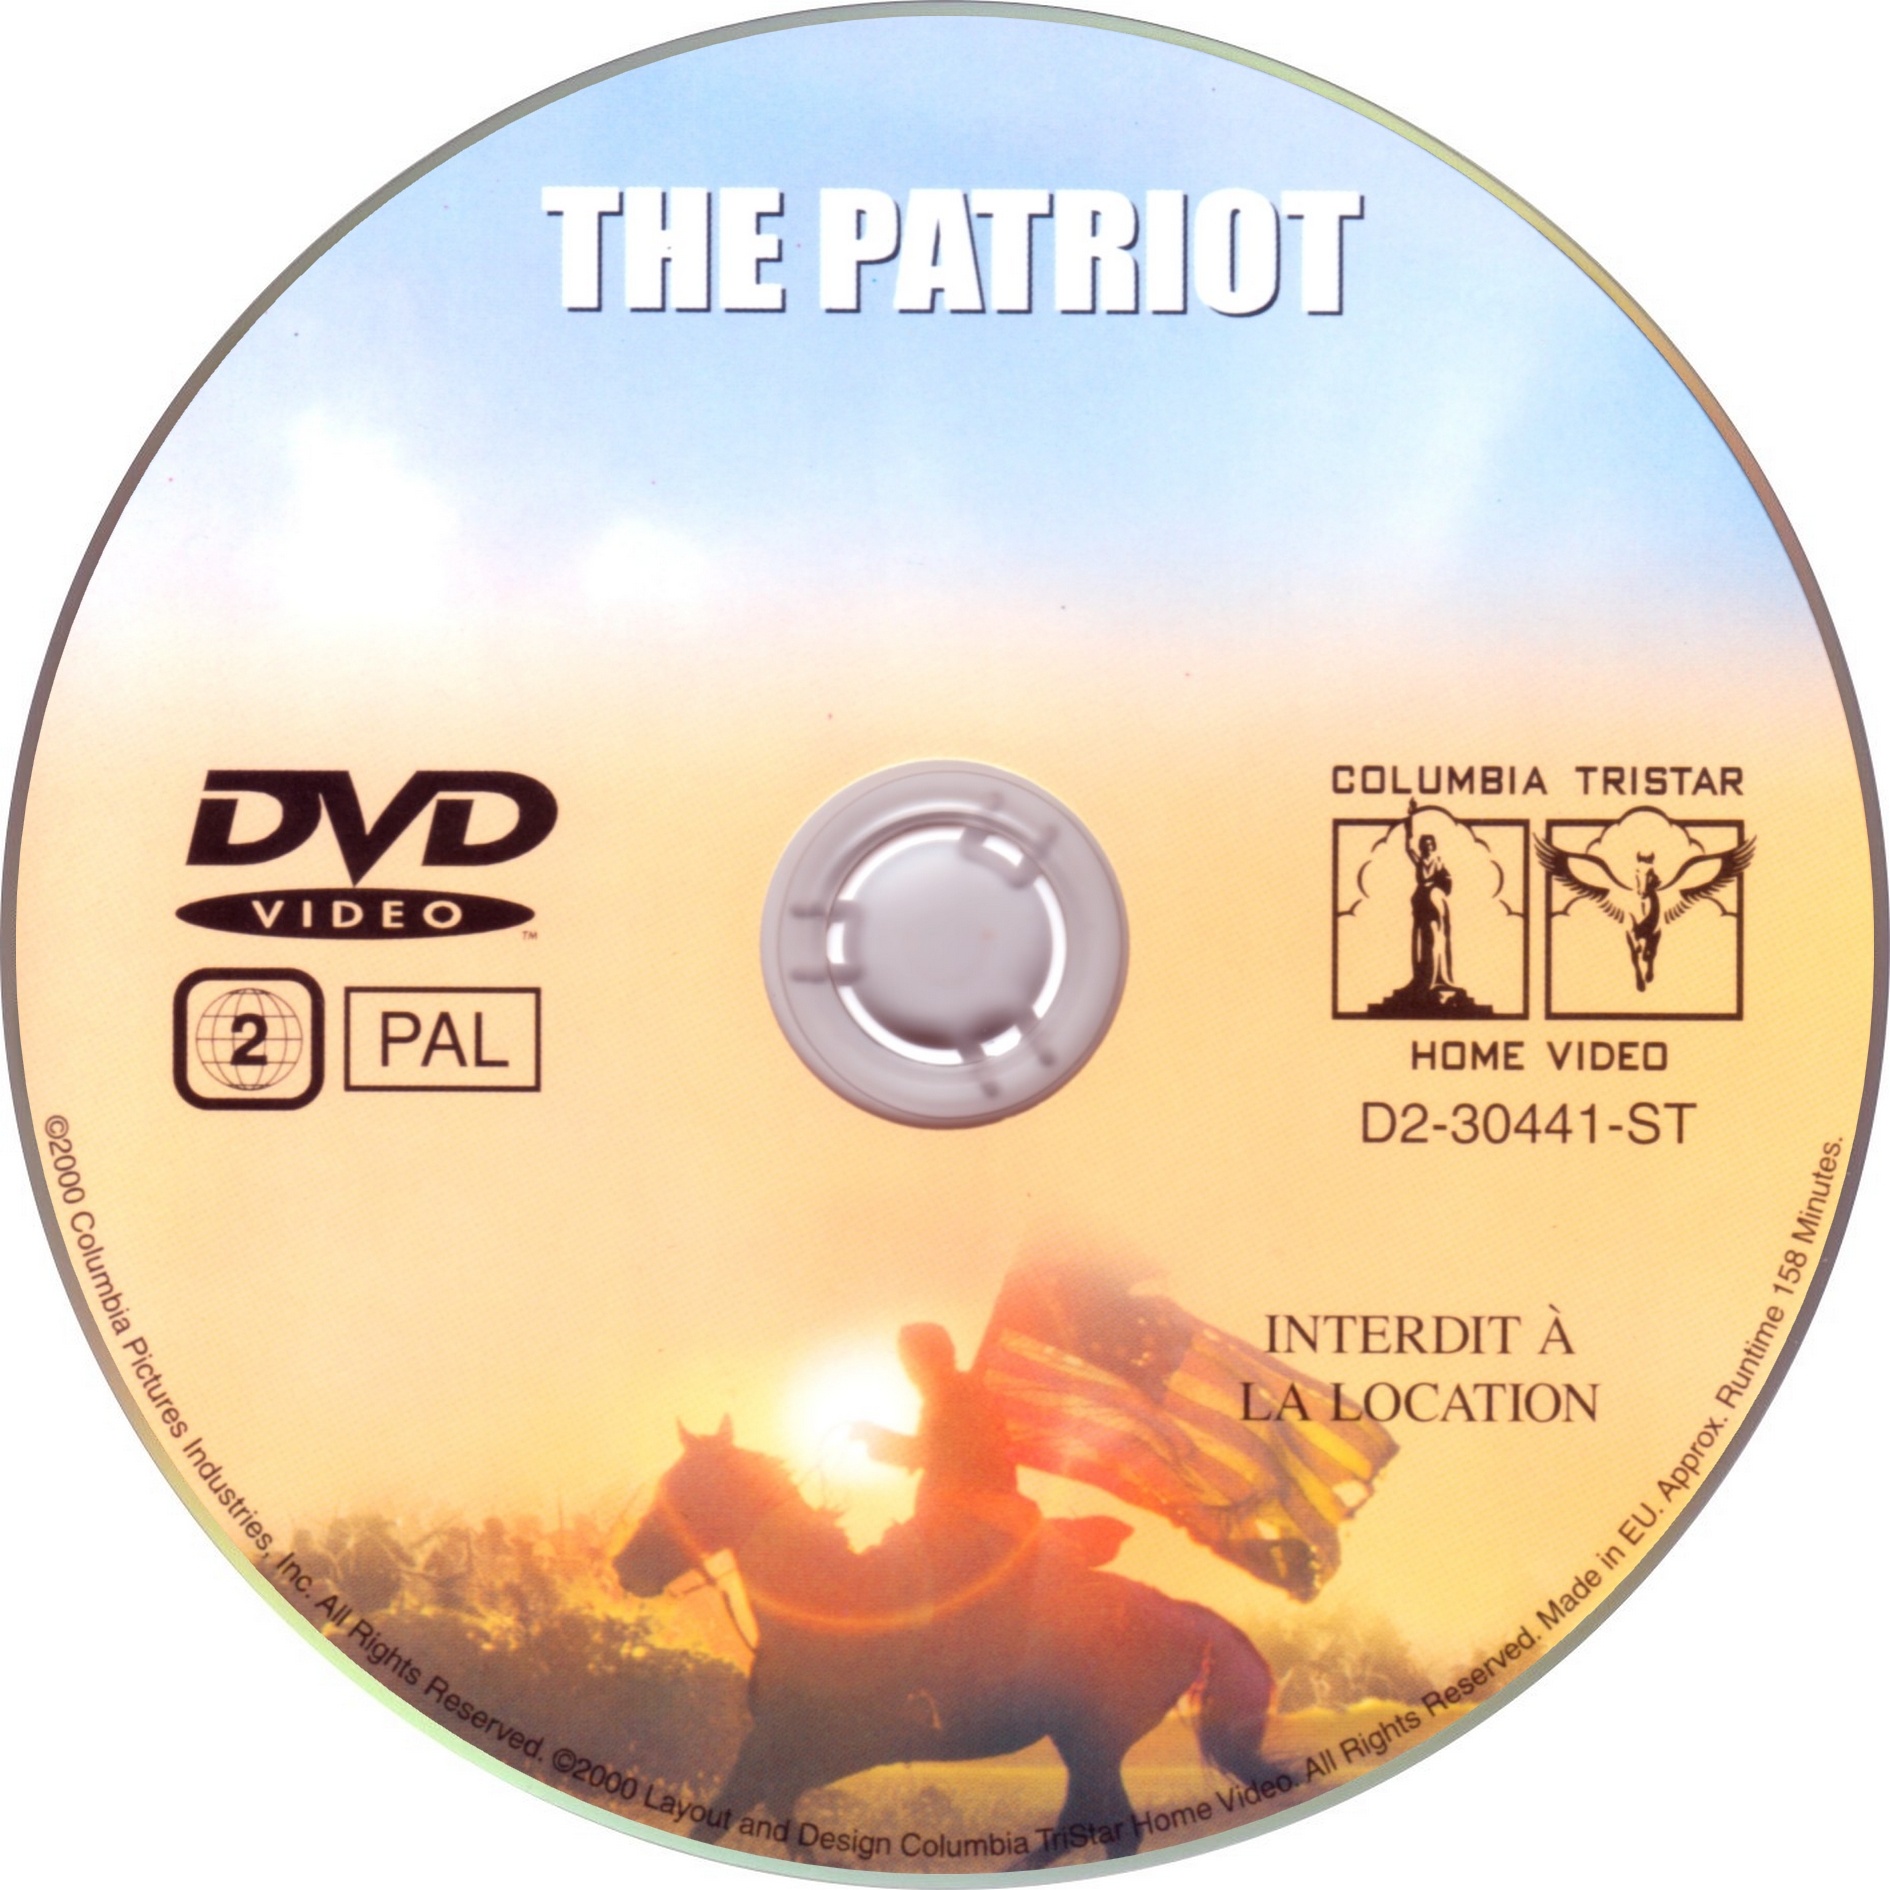 The patriot v2